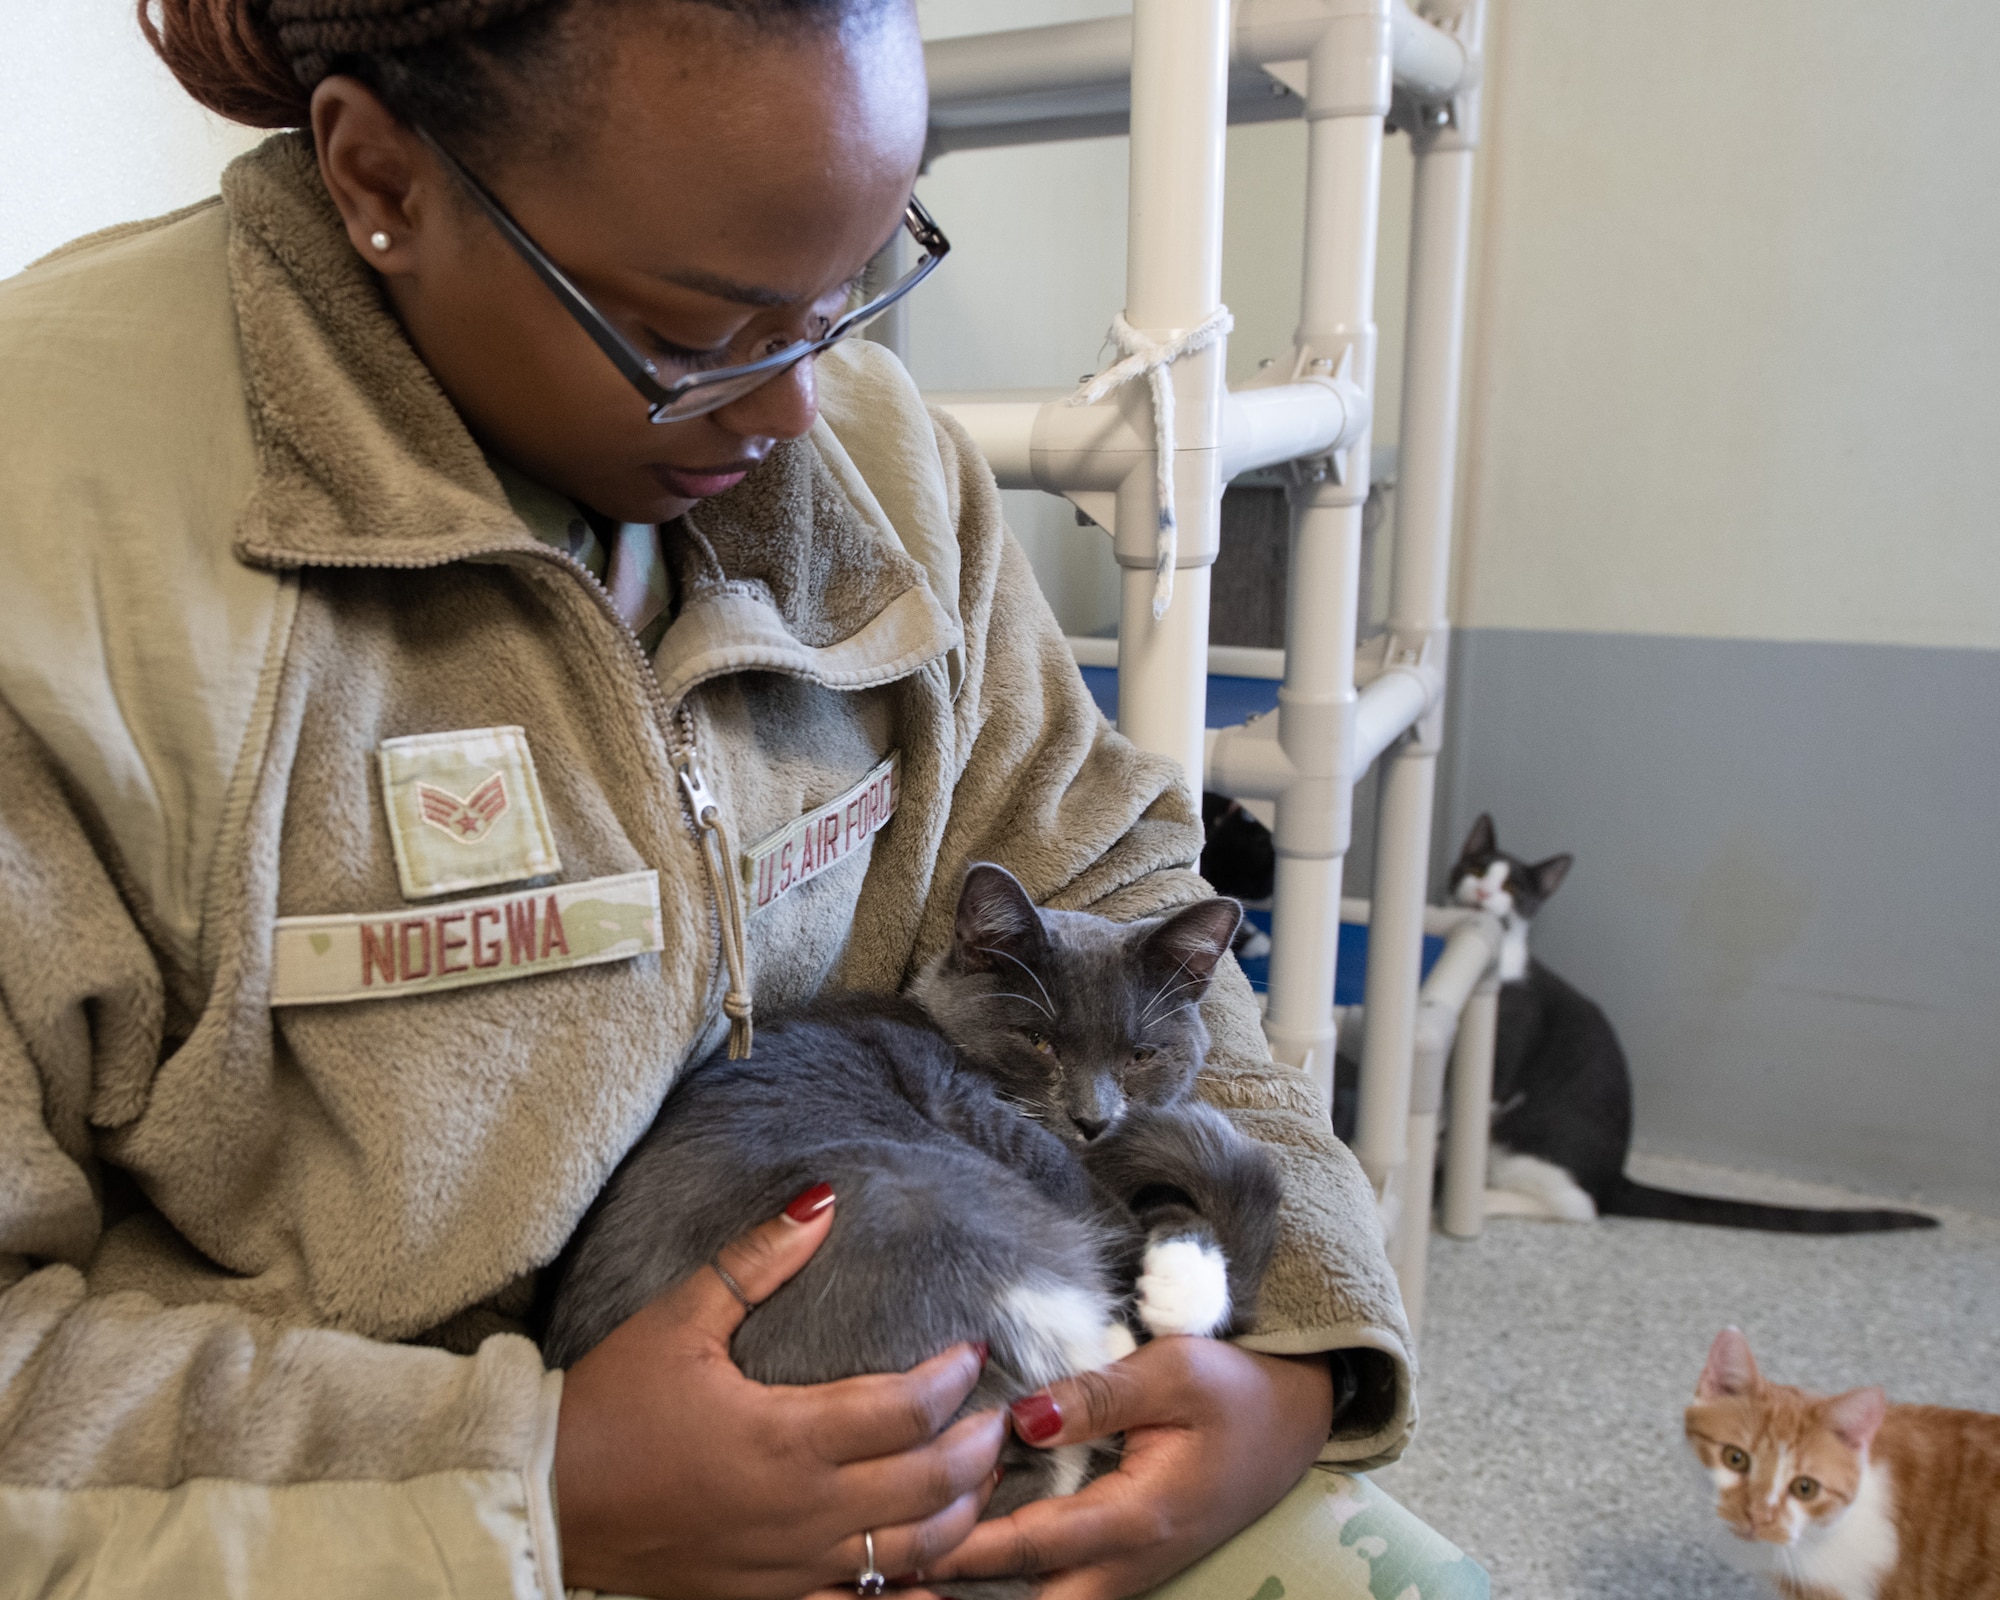 An Airman cradles a cat inside a cat welfare shelter.